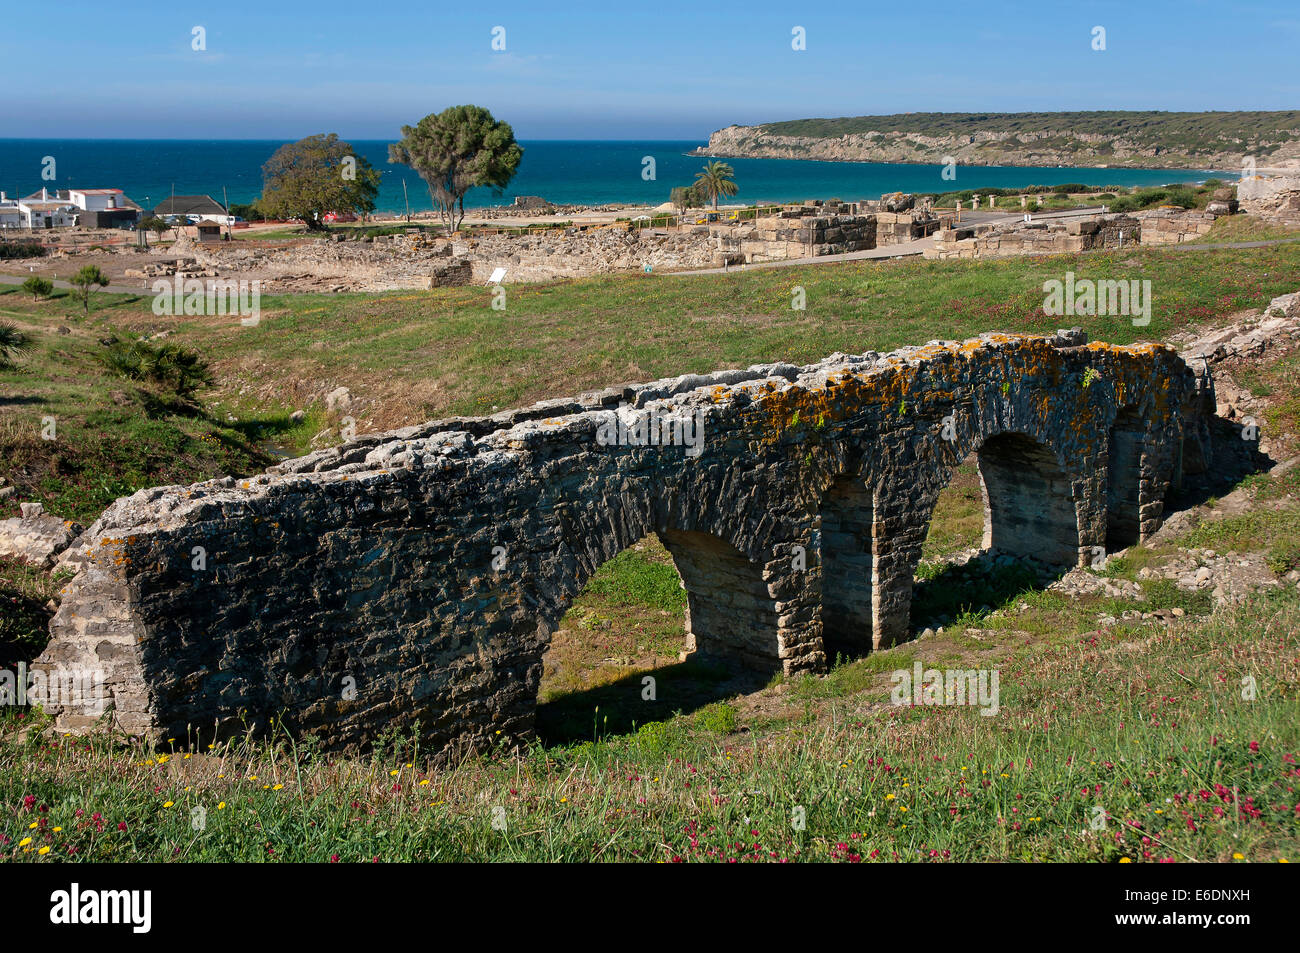 Le rovine romane di Baelo Claudia-acquedotto di Punta Paloma, Tarifa, Cadice provincia, regione dell'Andalusia, Spagna, Europa Foto Stock